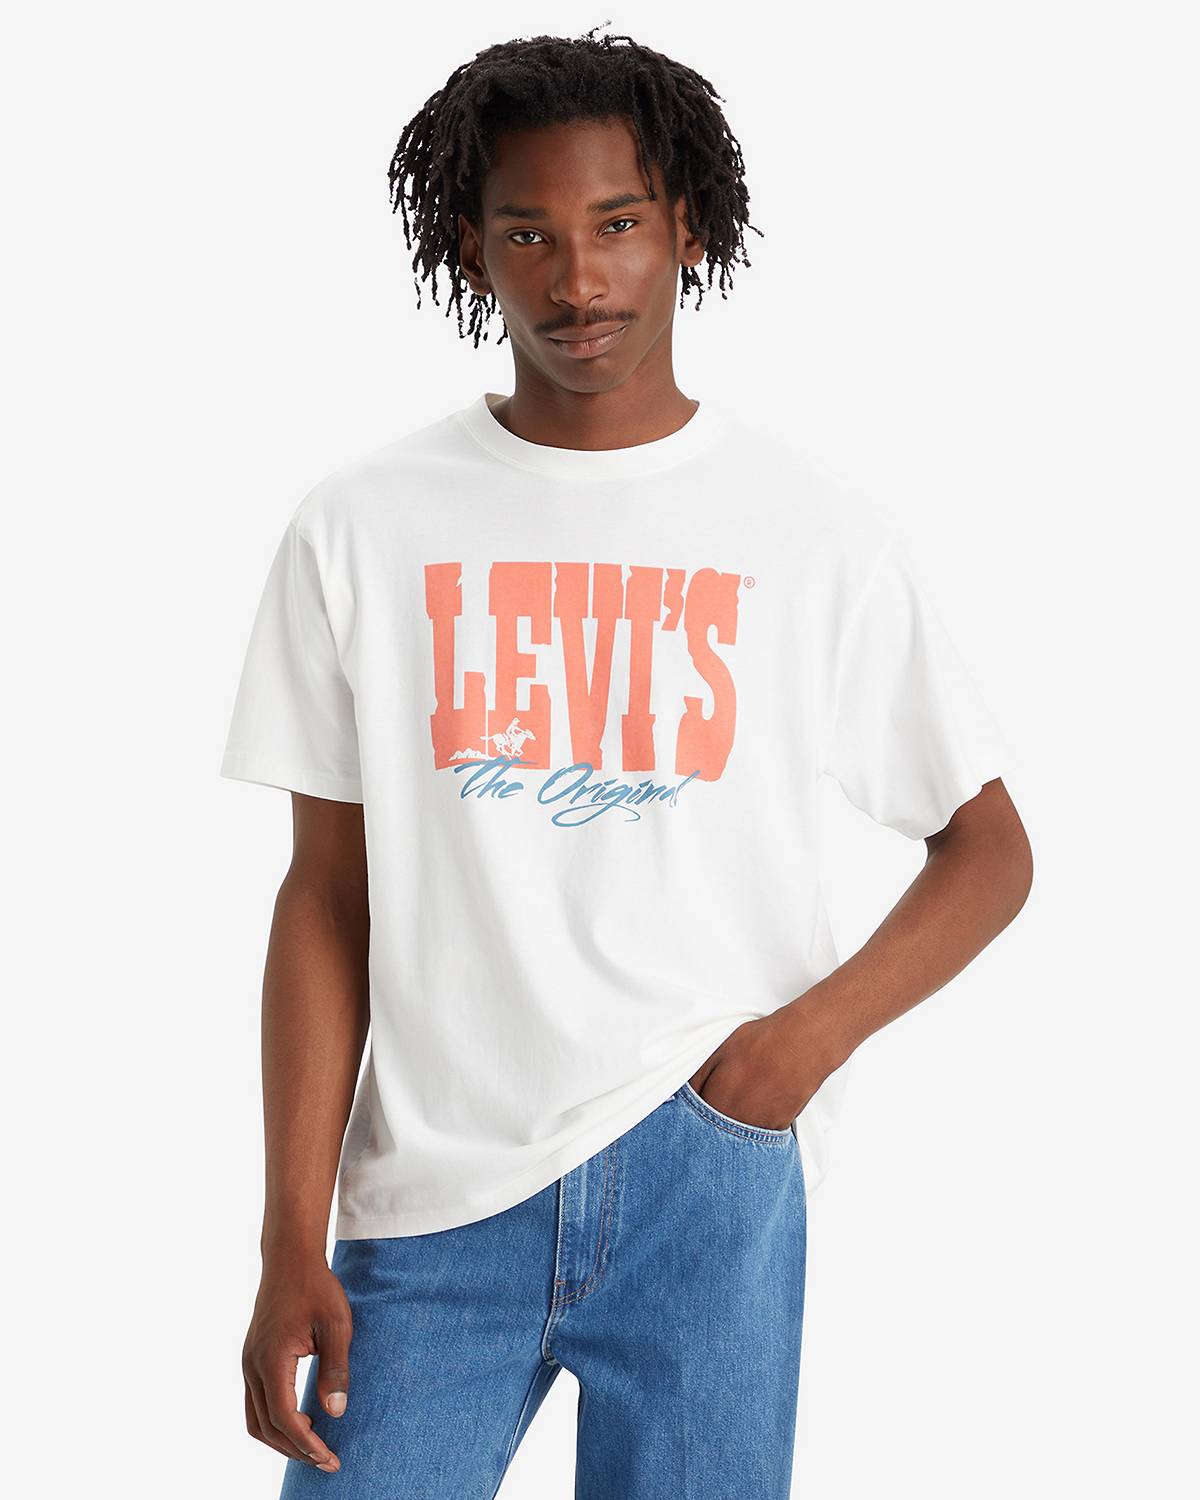 Men's Shirts - Shop T-Shirts, Plaid, Western & More | Levi's® US